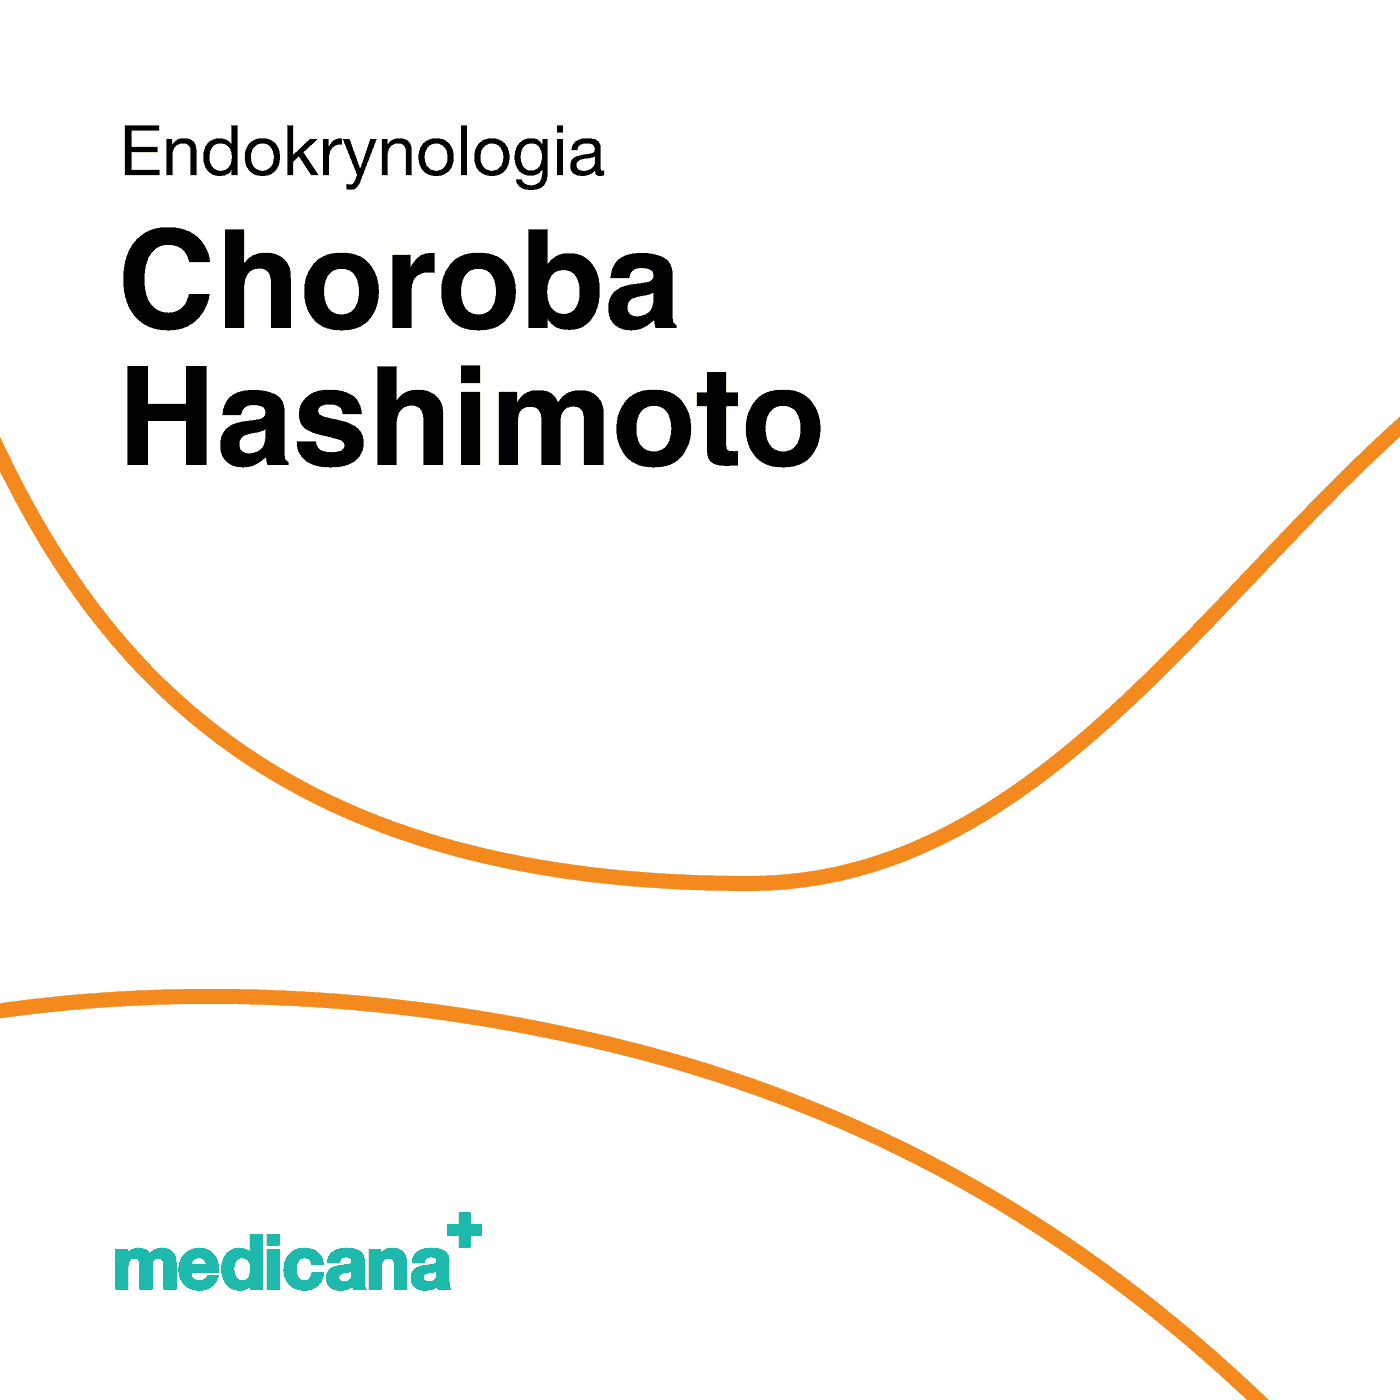 Grafika, białe tło z pomarańczową kreską, czarnym napisem Endokrynologia - Choroba Hashimoto i logo Medicana Centrum Terapii Medyczna Marihuana w lewym dolnym rogu.